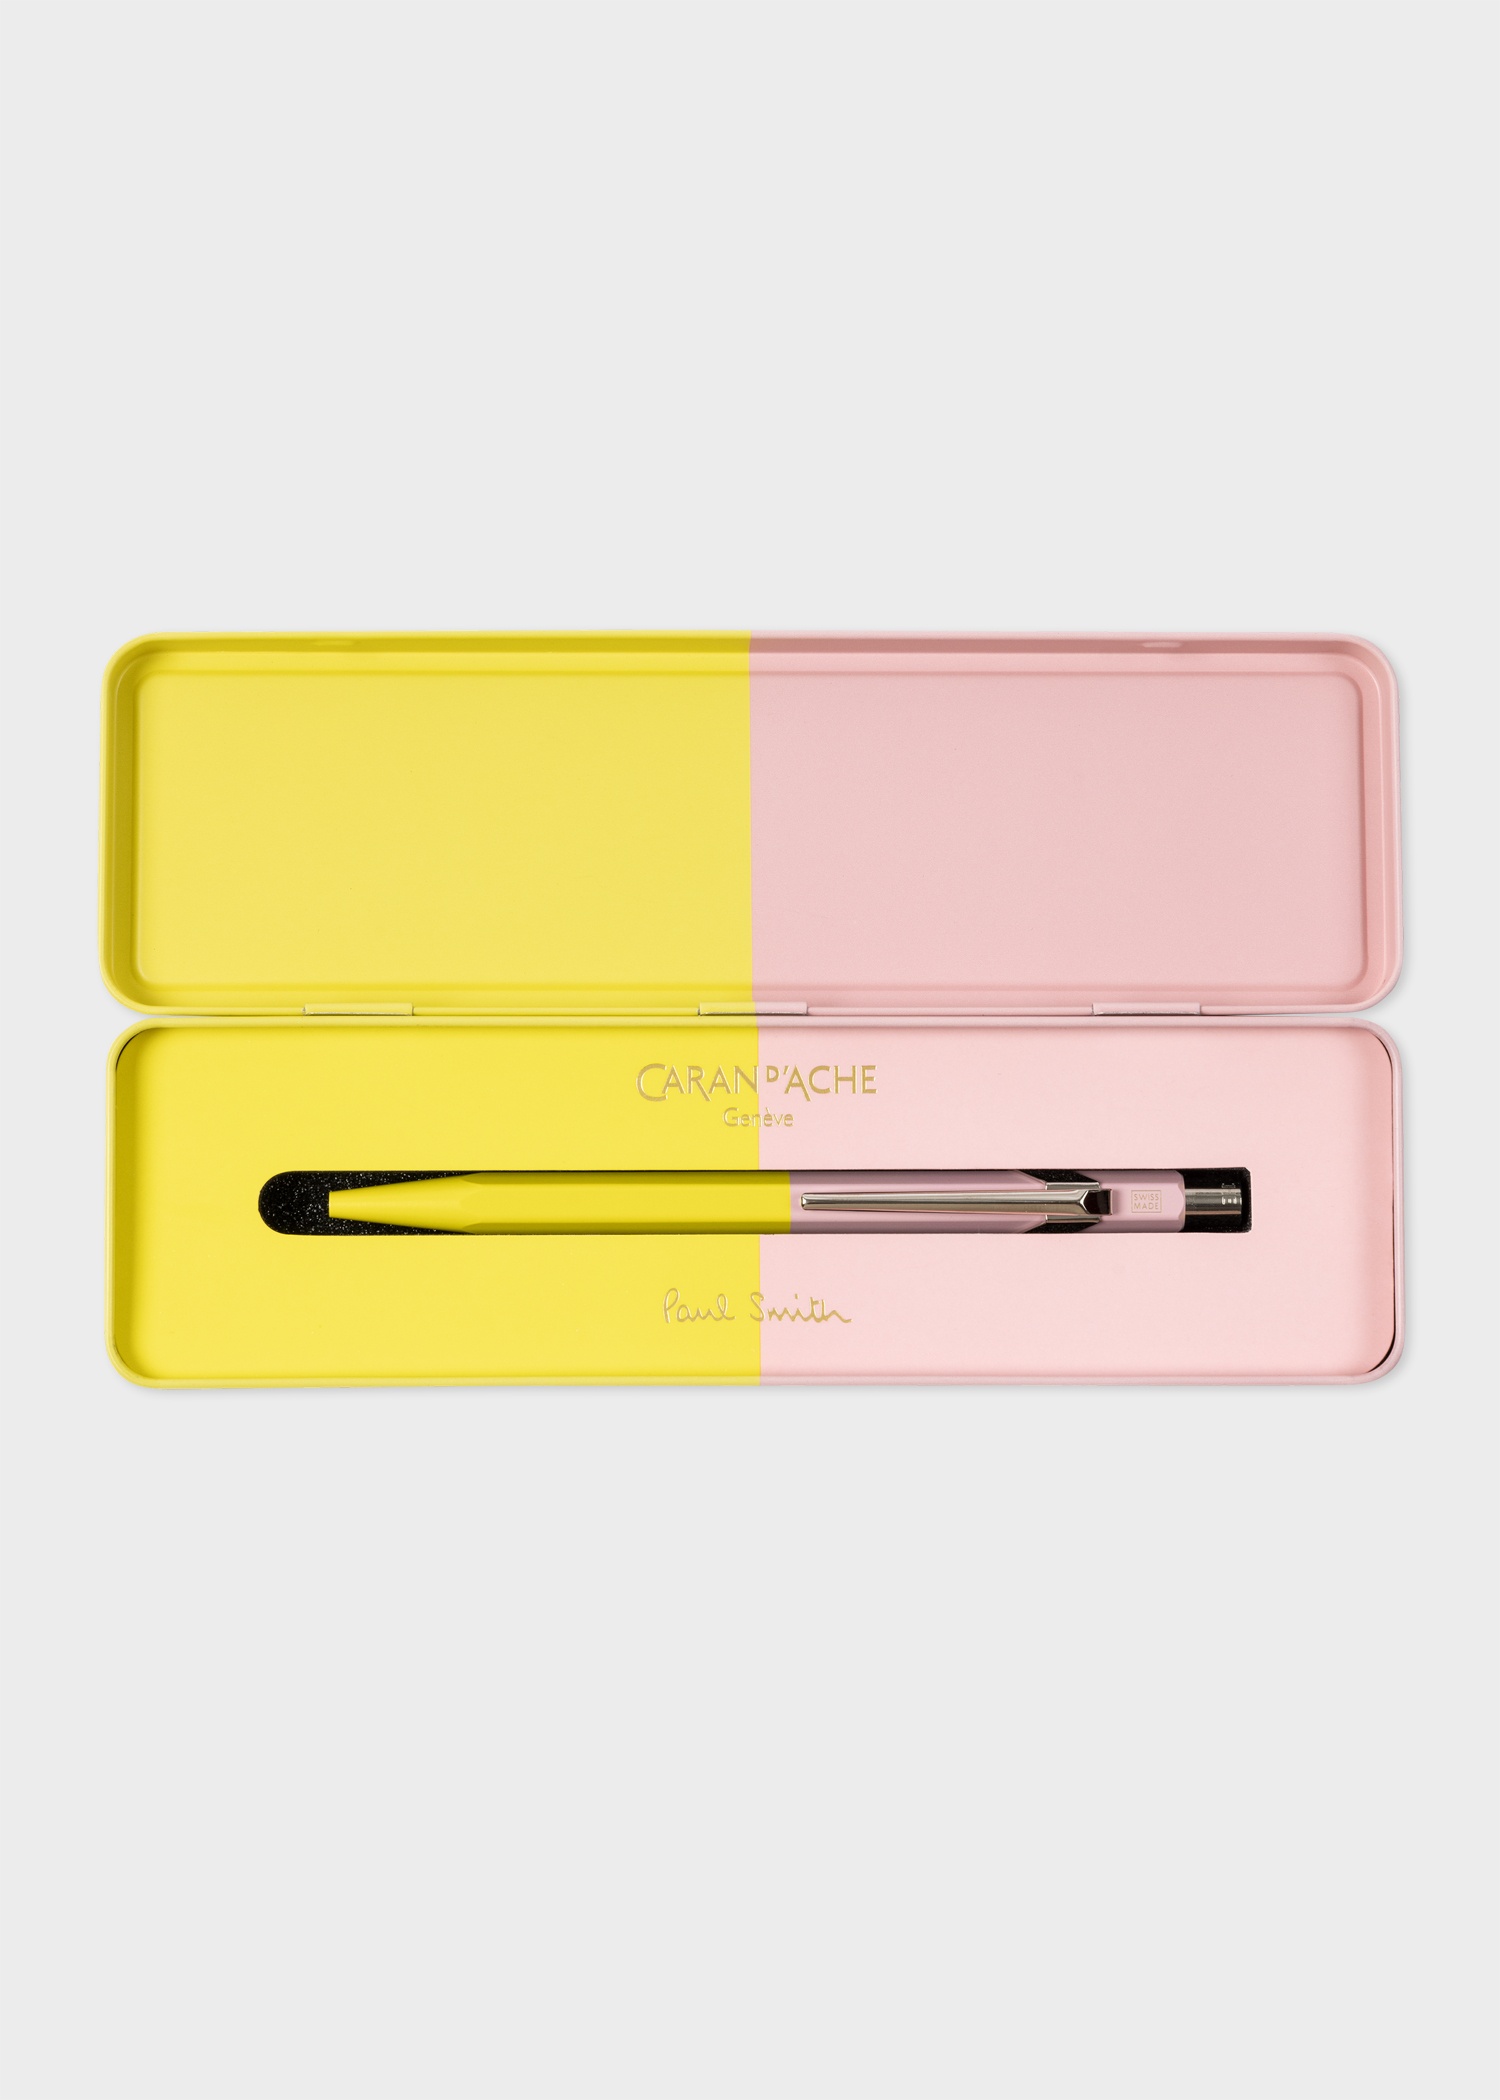 Caran d'Ache + Paul Smith - 849 Yellow & Pink Ballpoint Pen - 2